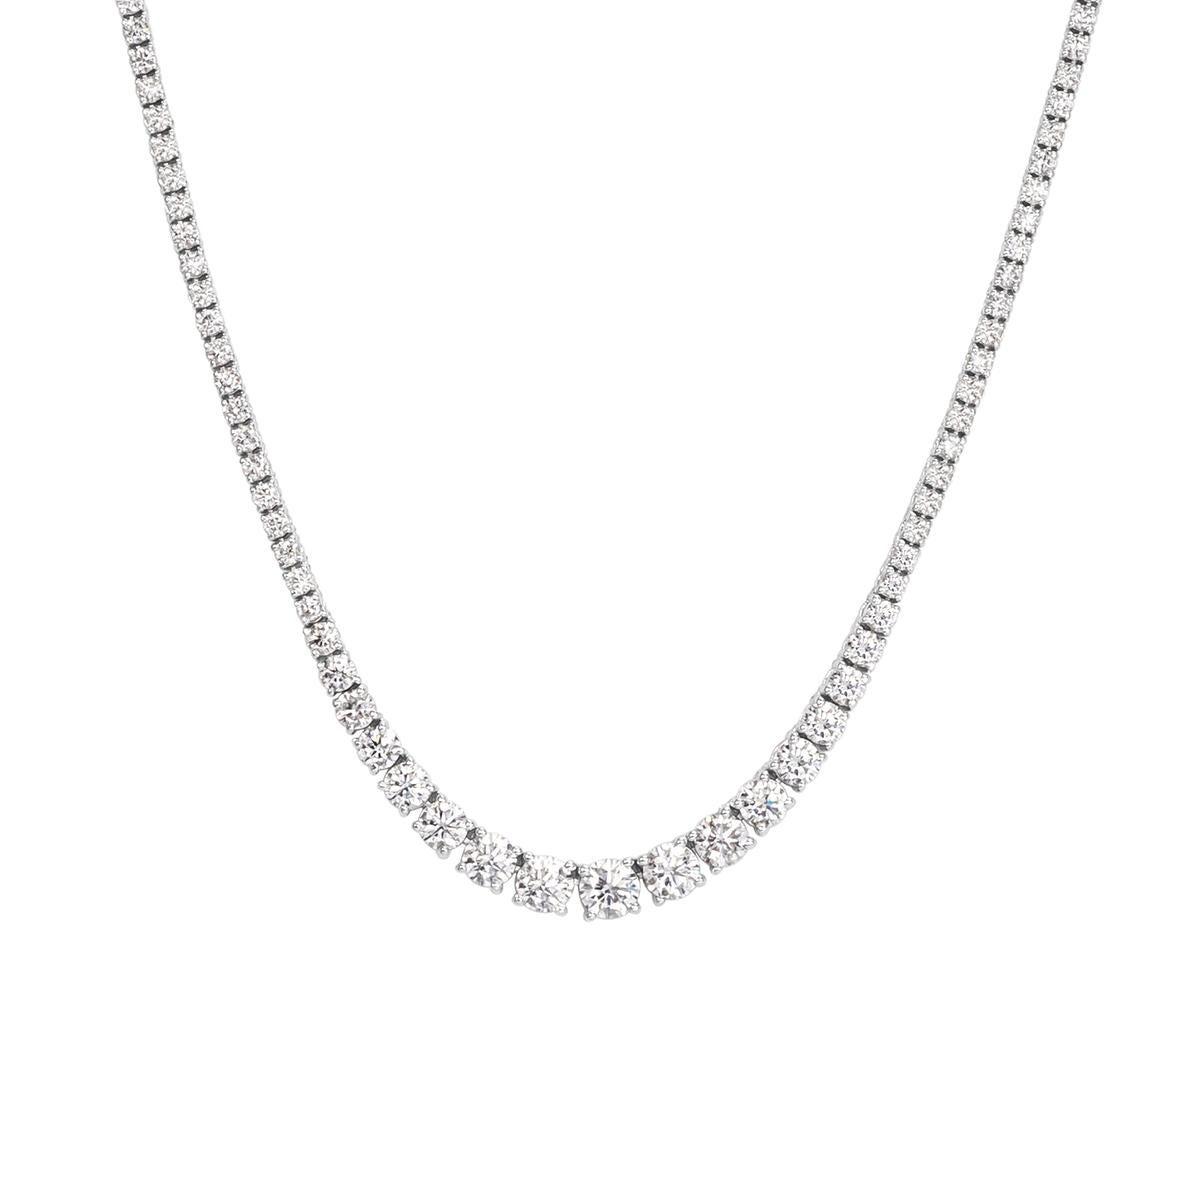 Diese wunderschöne Diamant-Tennis-Halskette präsentiert 7,75 Karat runde Diamanten im Brillantschliff, die in einer individuell abgestuften Fassung angeordnet sind. Sie sind auffallend weiß und funkeln gewaltig! Sie sind mit F-G in der Farbe und